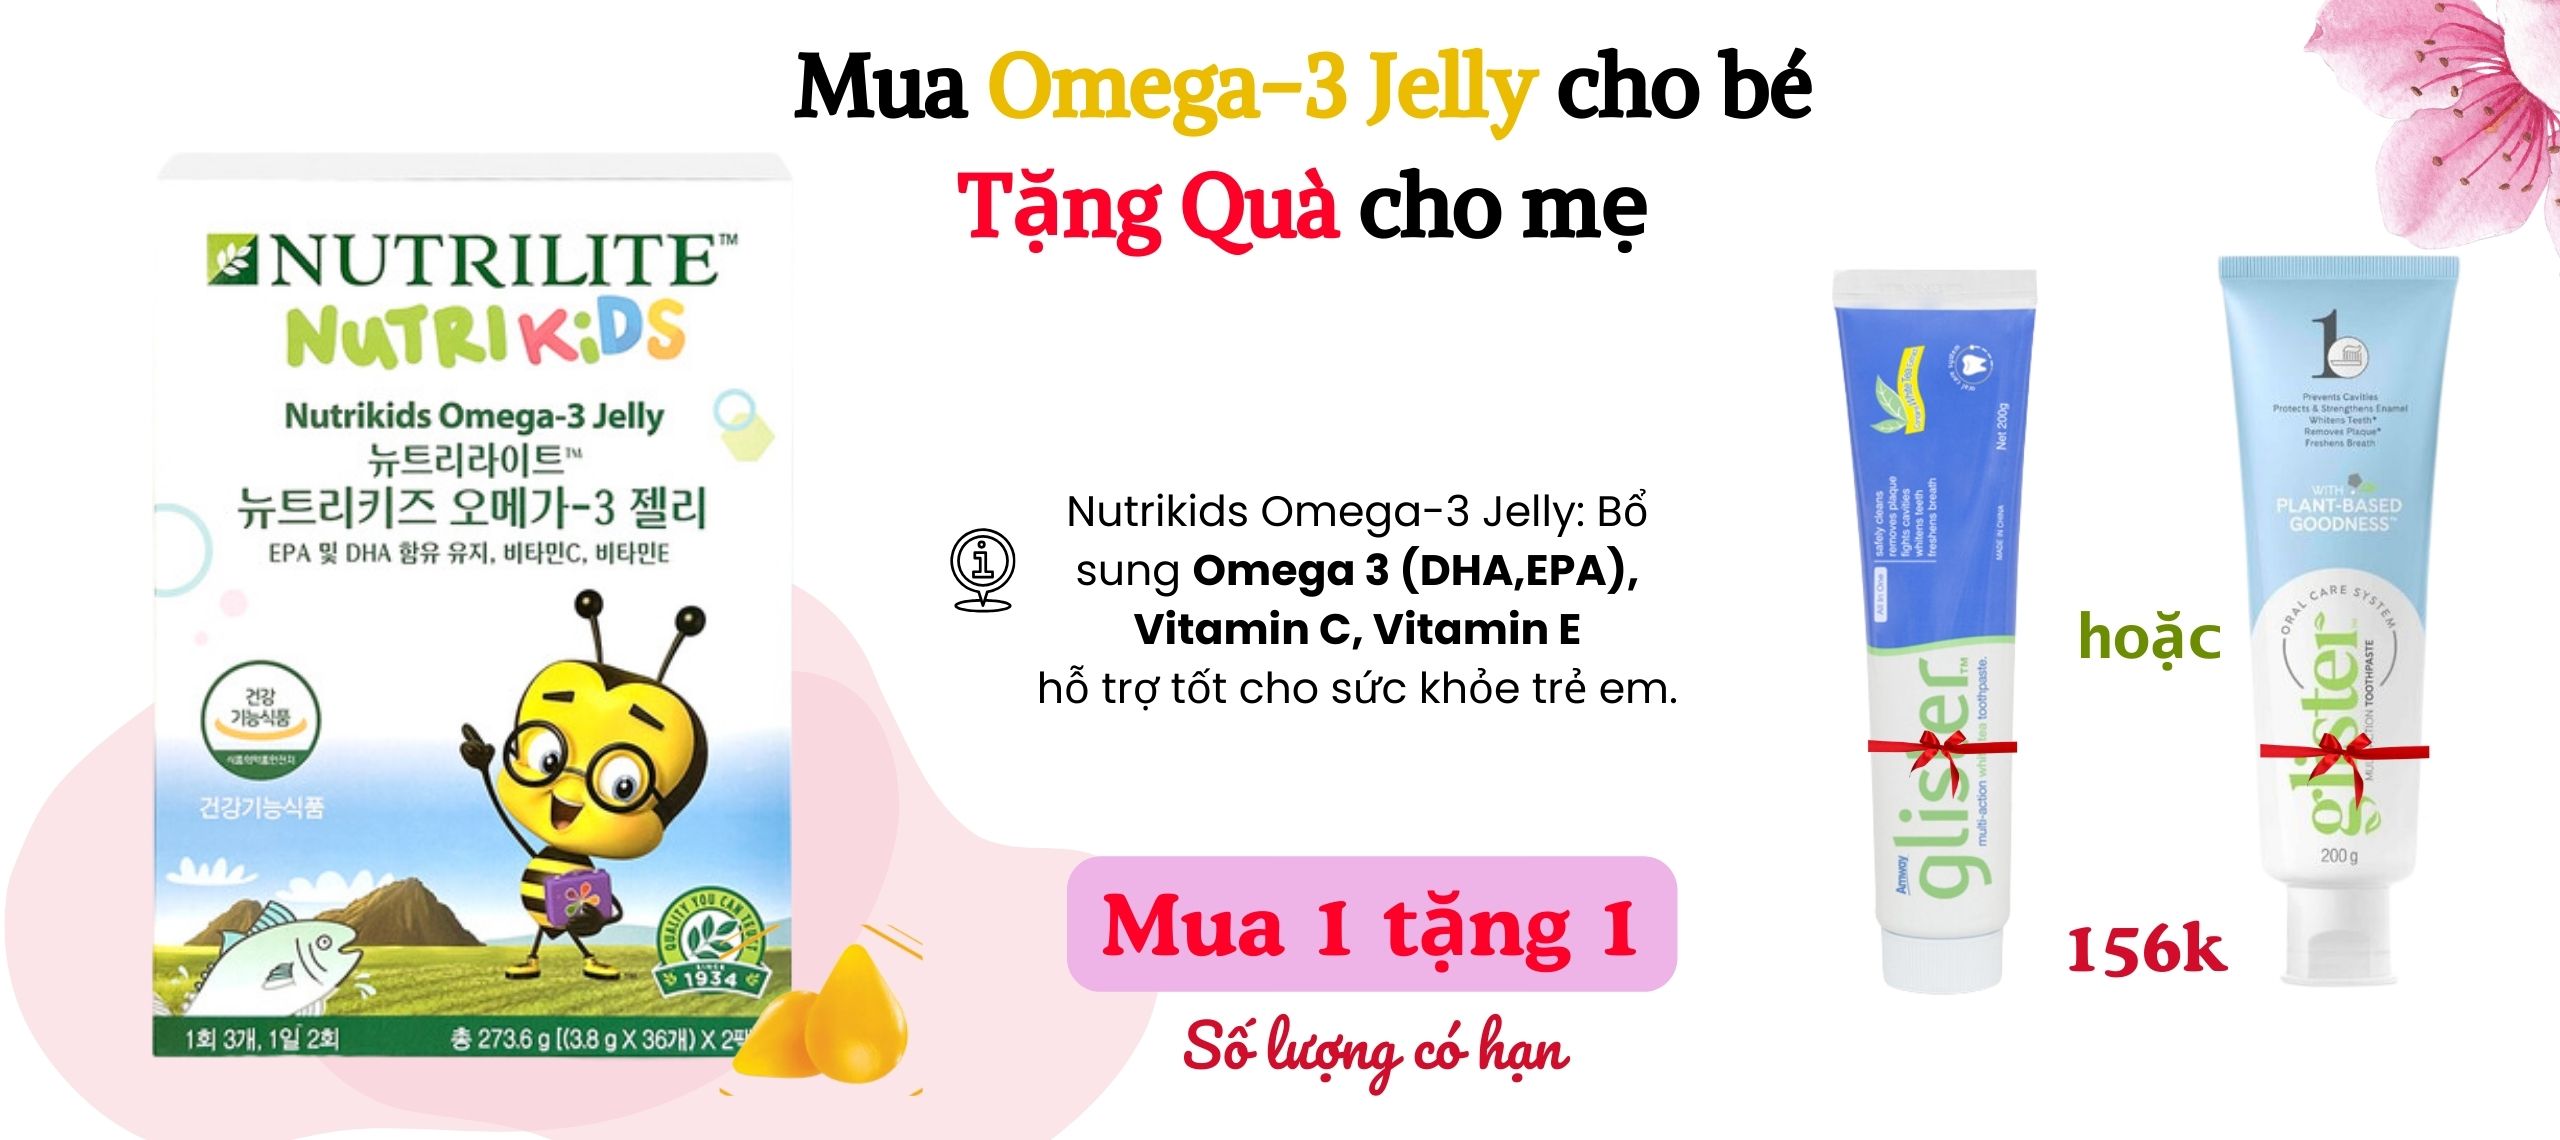 Omega-3 jelly cho bé giảm sốc 539.000đ